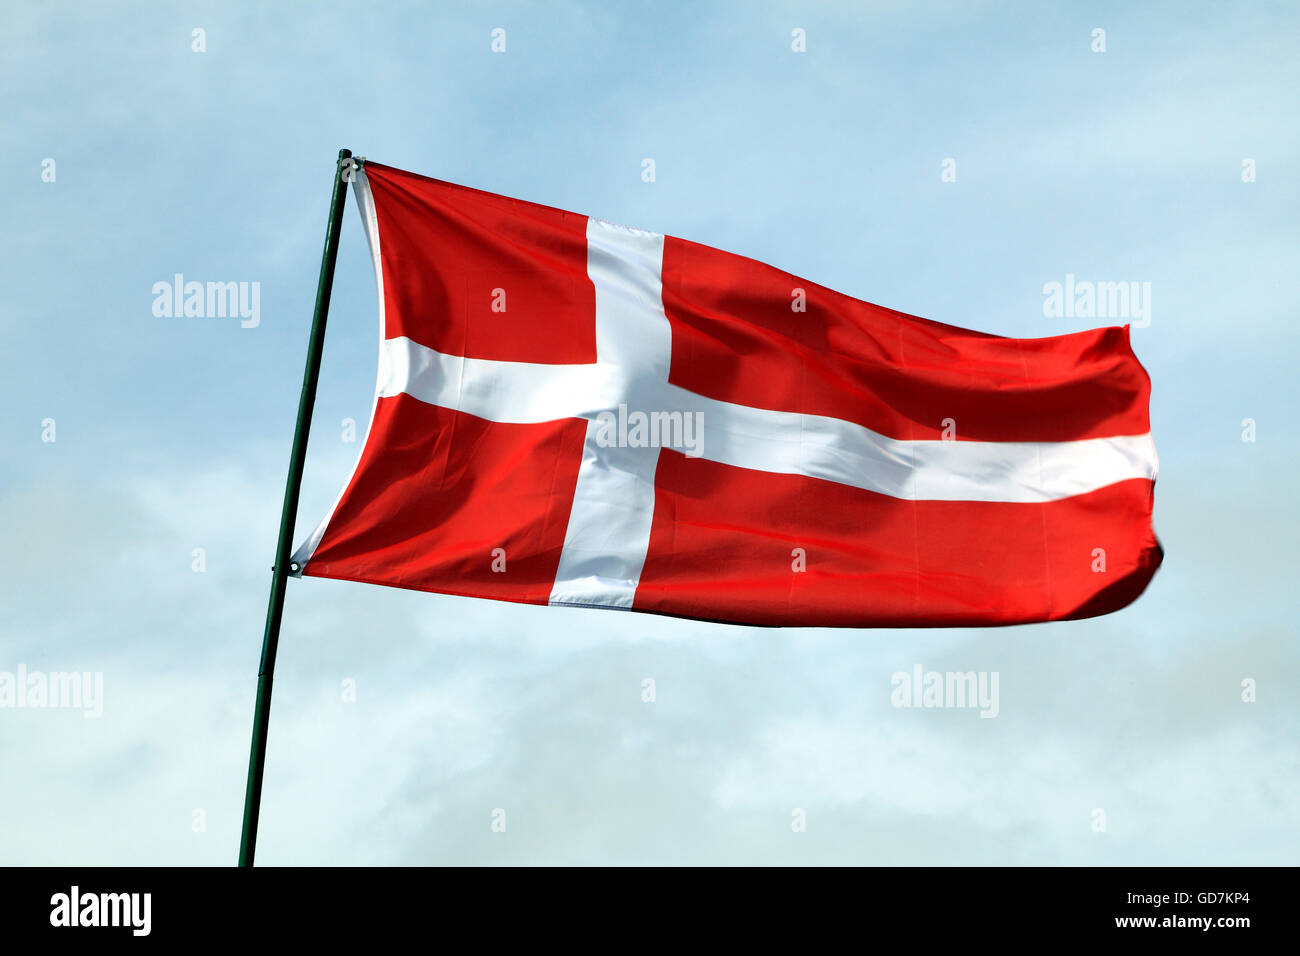 Cờ đánh dấu quốc gia, niềm tự hào của nơi đây. Bảng hiệu quốc gia Đan Mạch với biểu tượng Đan Mạch sẽ khiến bạn tự hào về đất nước của mình. Bộ đồng-phục-nghi thức của các quan chức chính phủ cũng có sắc đỏ và trắng như cờ đó nữa.